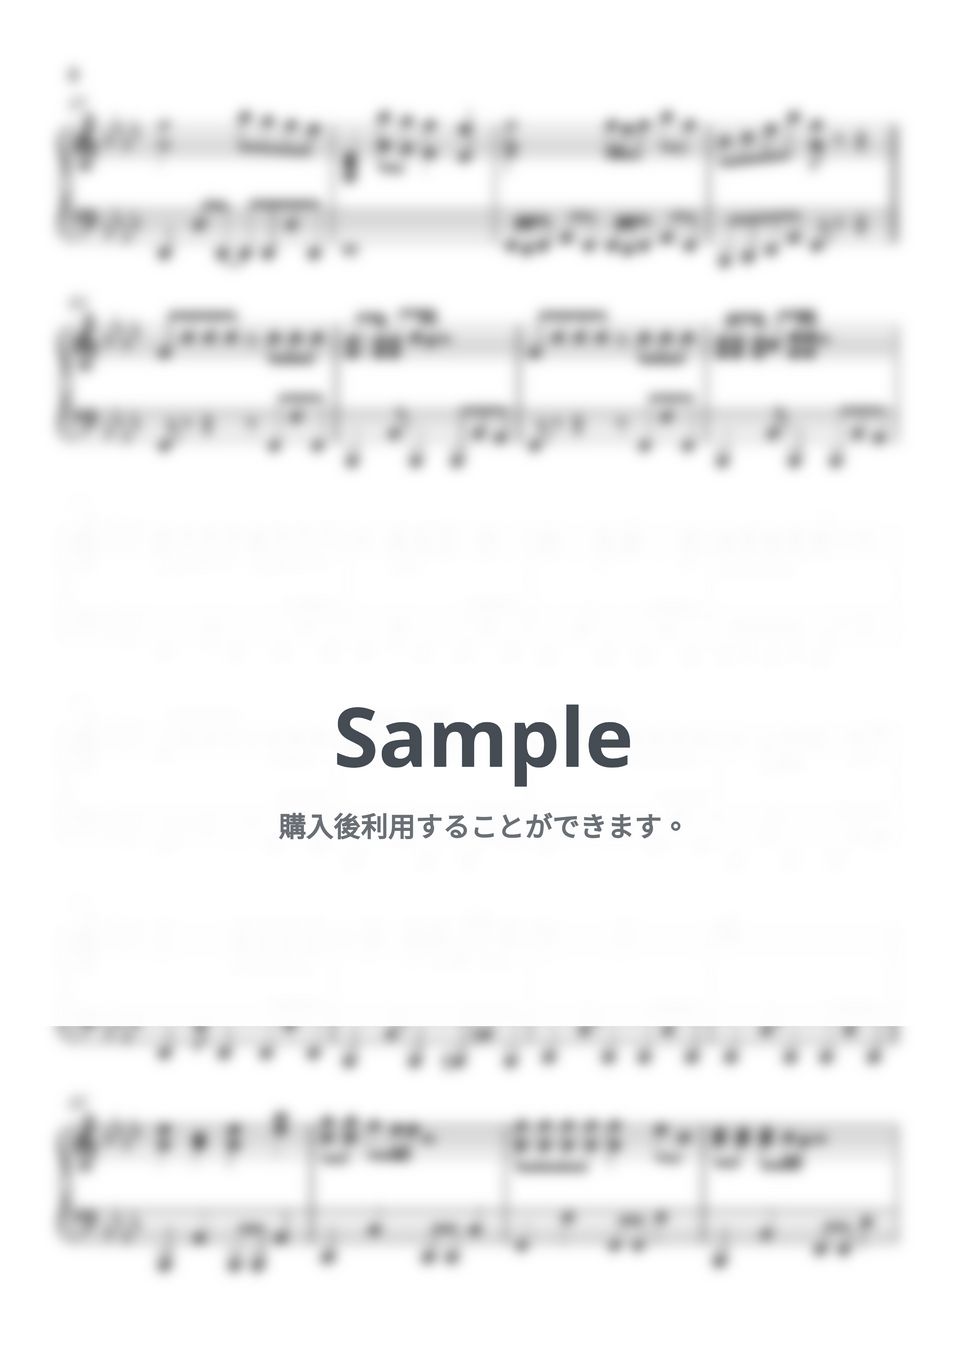 高橋洋樹 - 魔訶不思議アドベンチャー! (ドラゴンボール) by Piano Lovers. jp